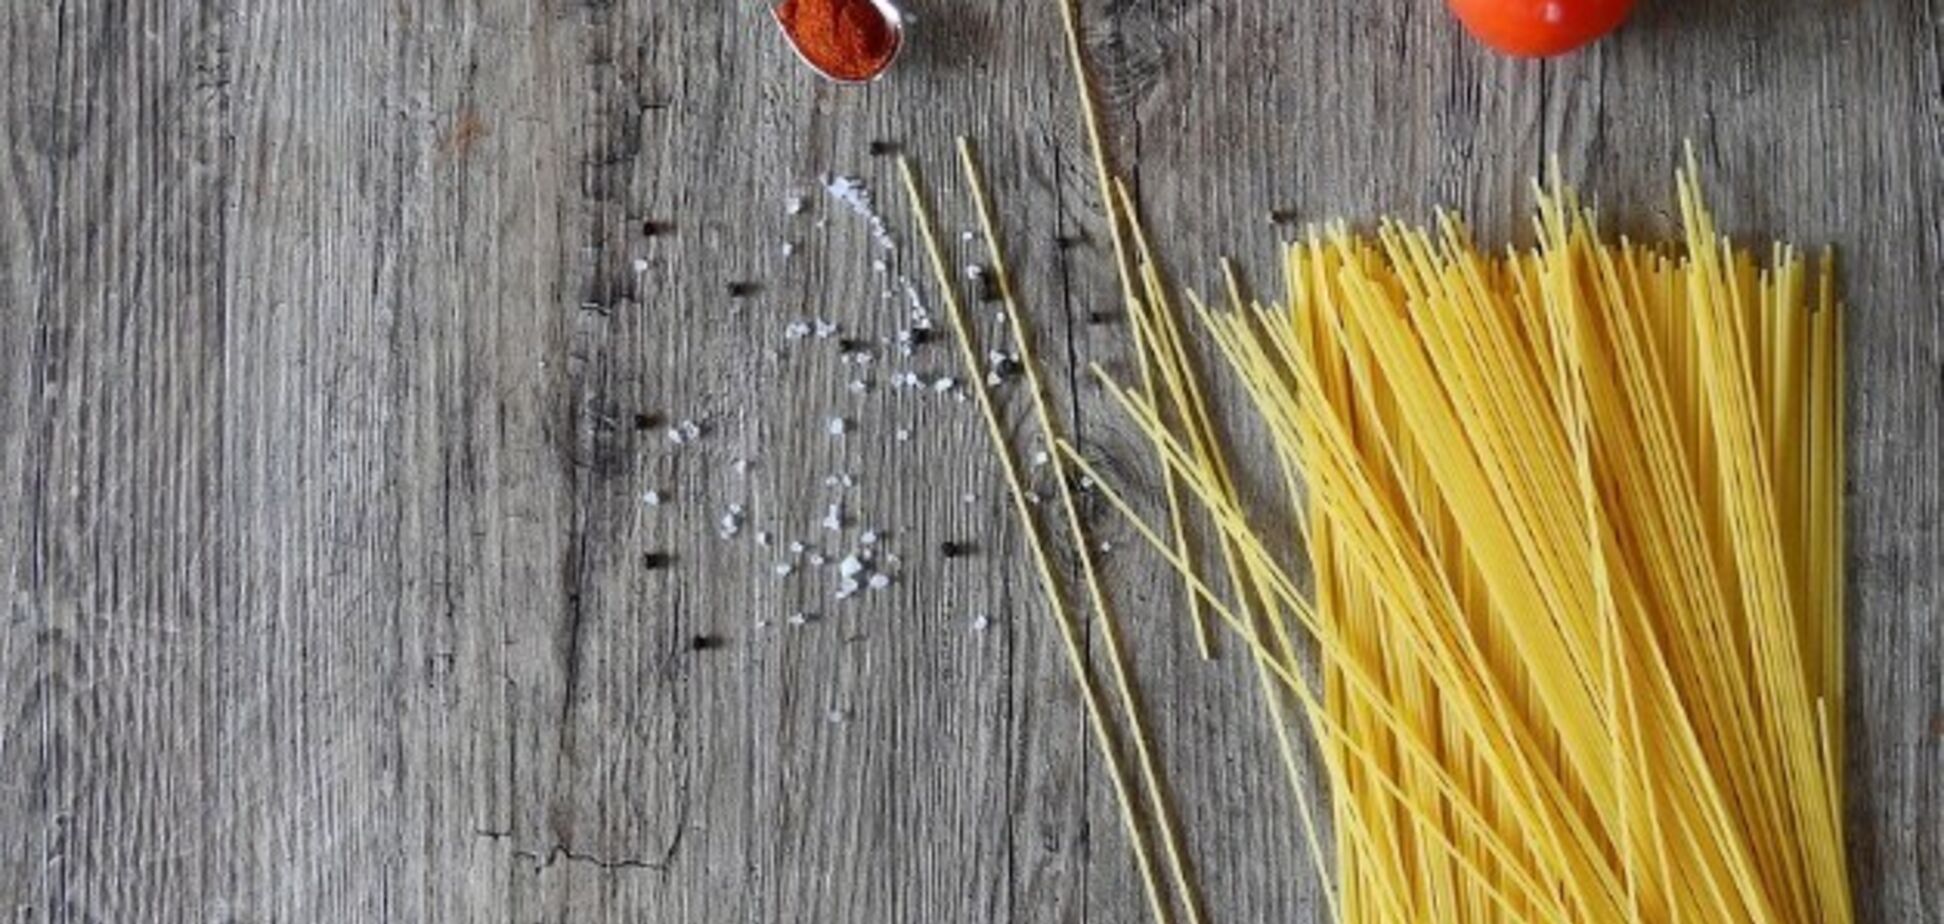 Как правильно готовить спагетти, чтобы они были вкусными: делимся технологией